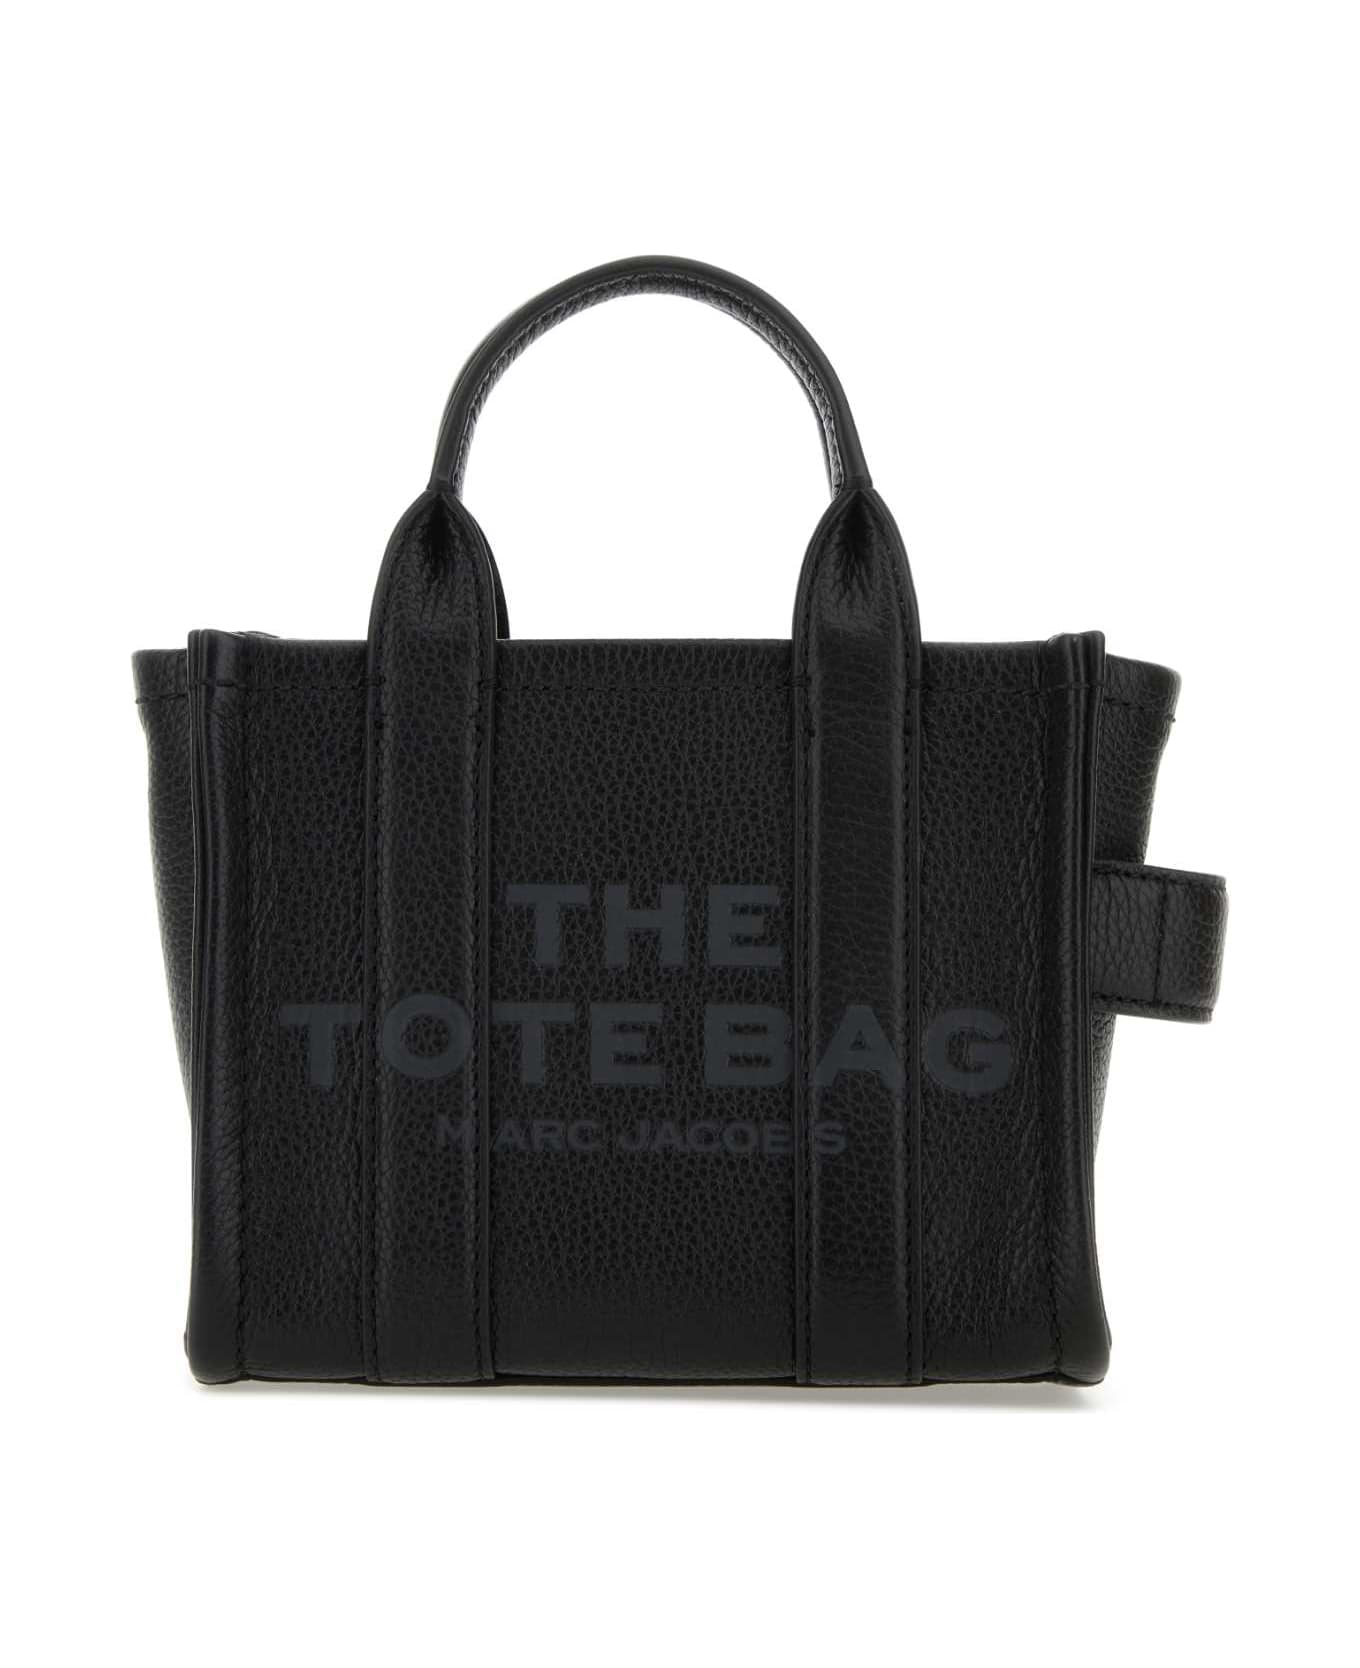 Marc Jacobs Black Leather Micro The Tote Bag Handbag - 001